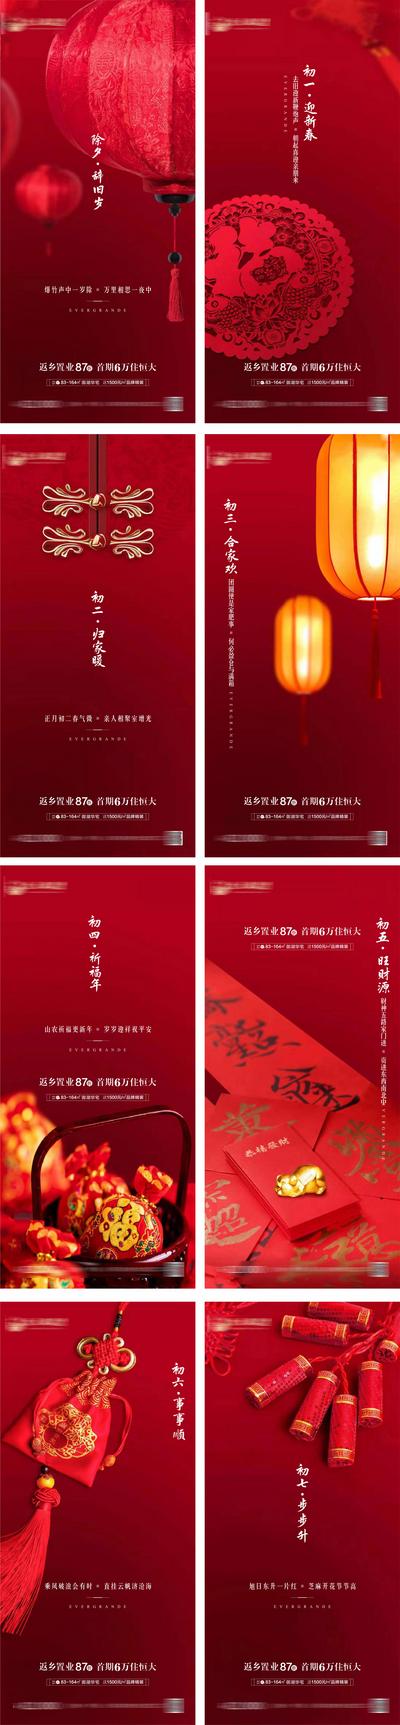 南门网 海报 房地产 中国传统节日 除夕 春节 返乡置业 灯笼 剪纸